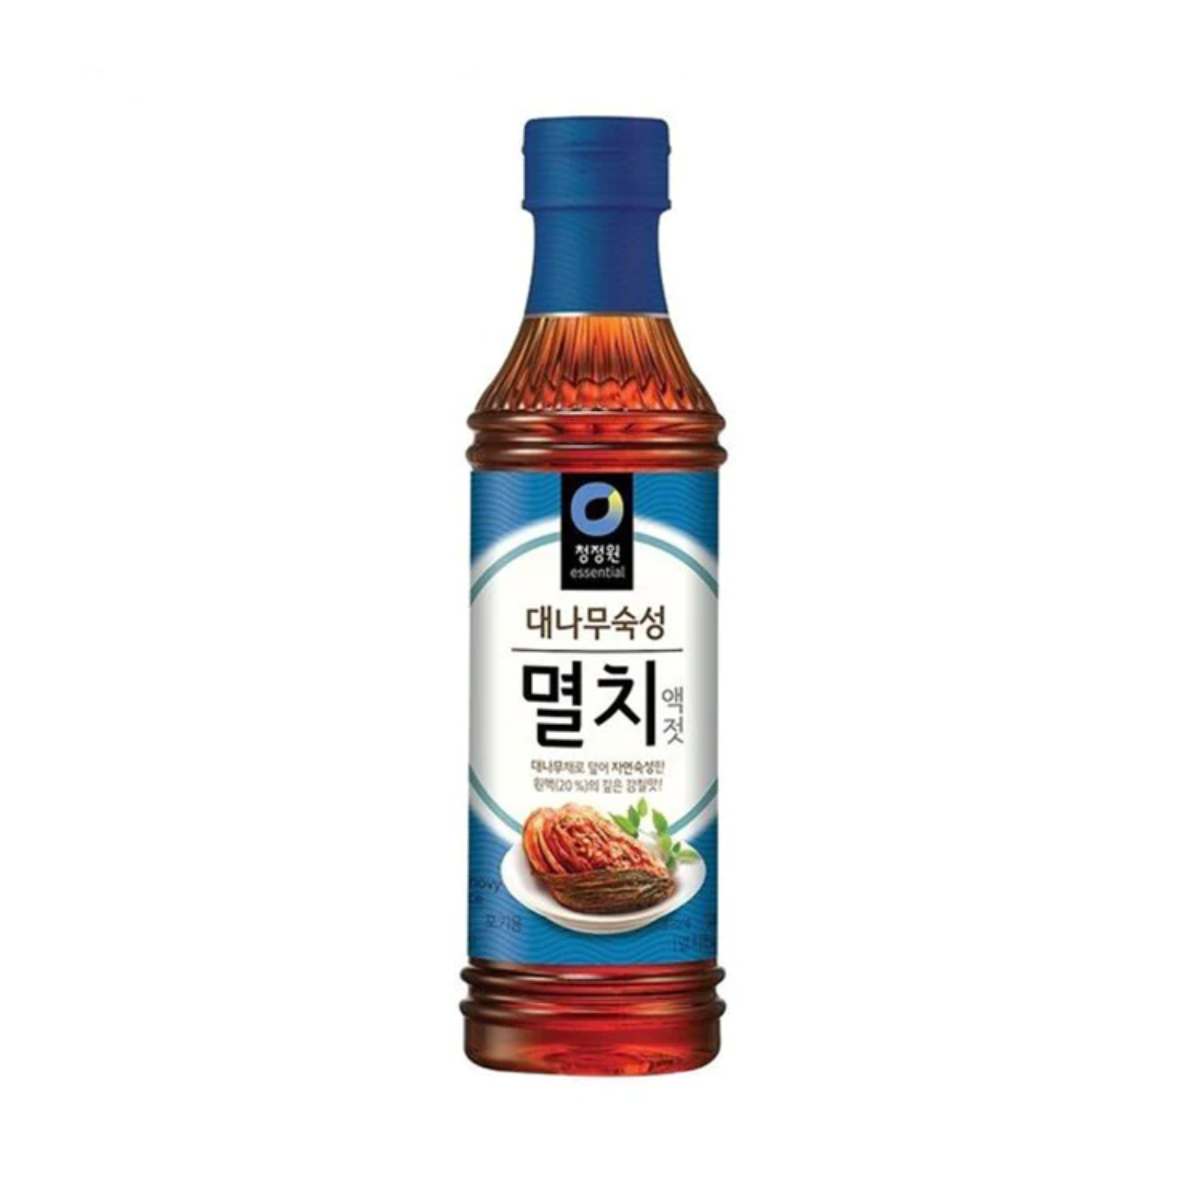 Molho de Peixe Anchova para Preparo Kimchi Coreano Daesang - 500 gramas